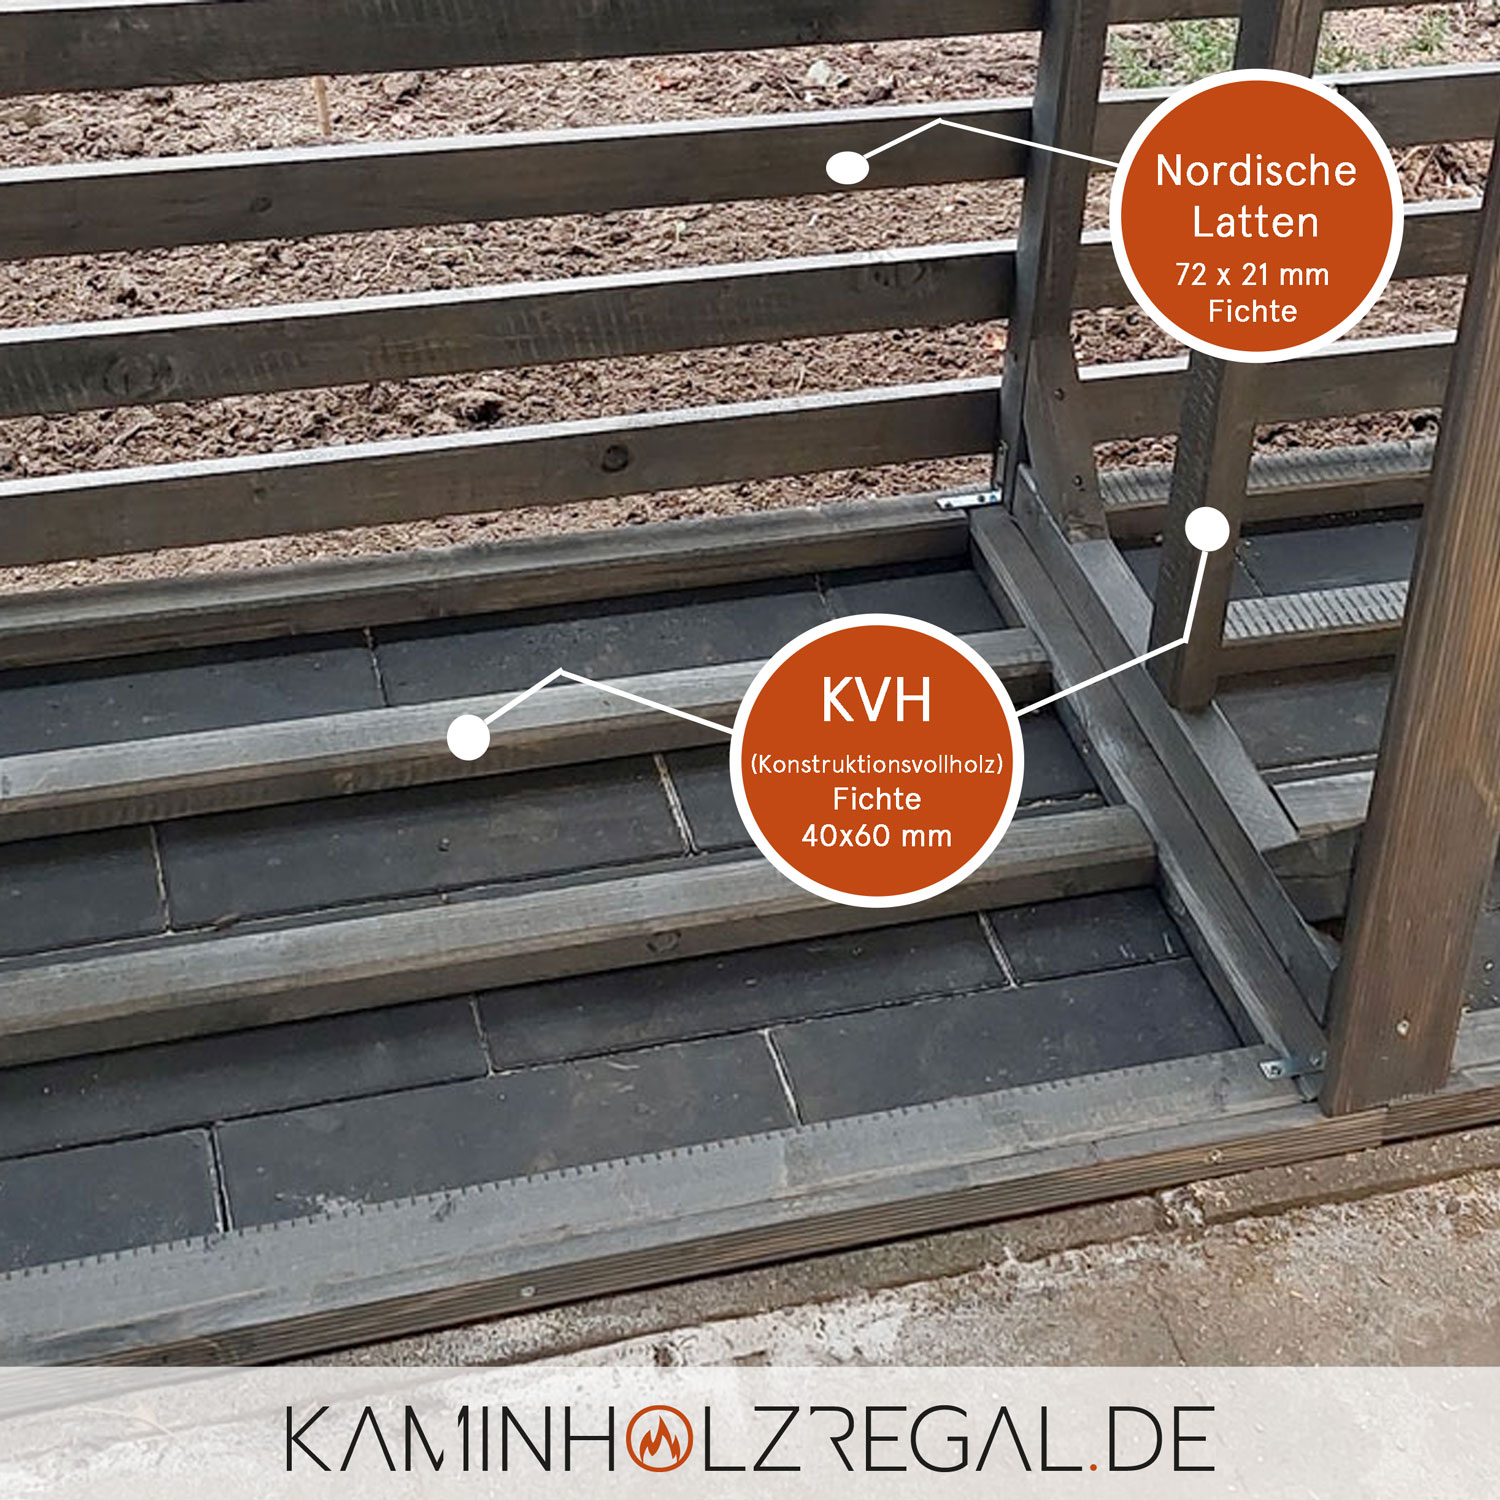 Premium Kaminholzregal - Rhombus Seitenverkleidung, HPL Dachplatte und Rückwand - graphitgrau/anthrazit